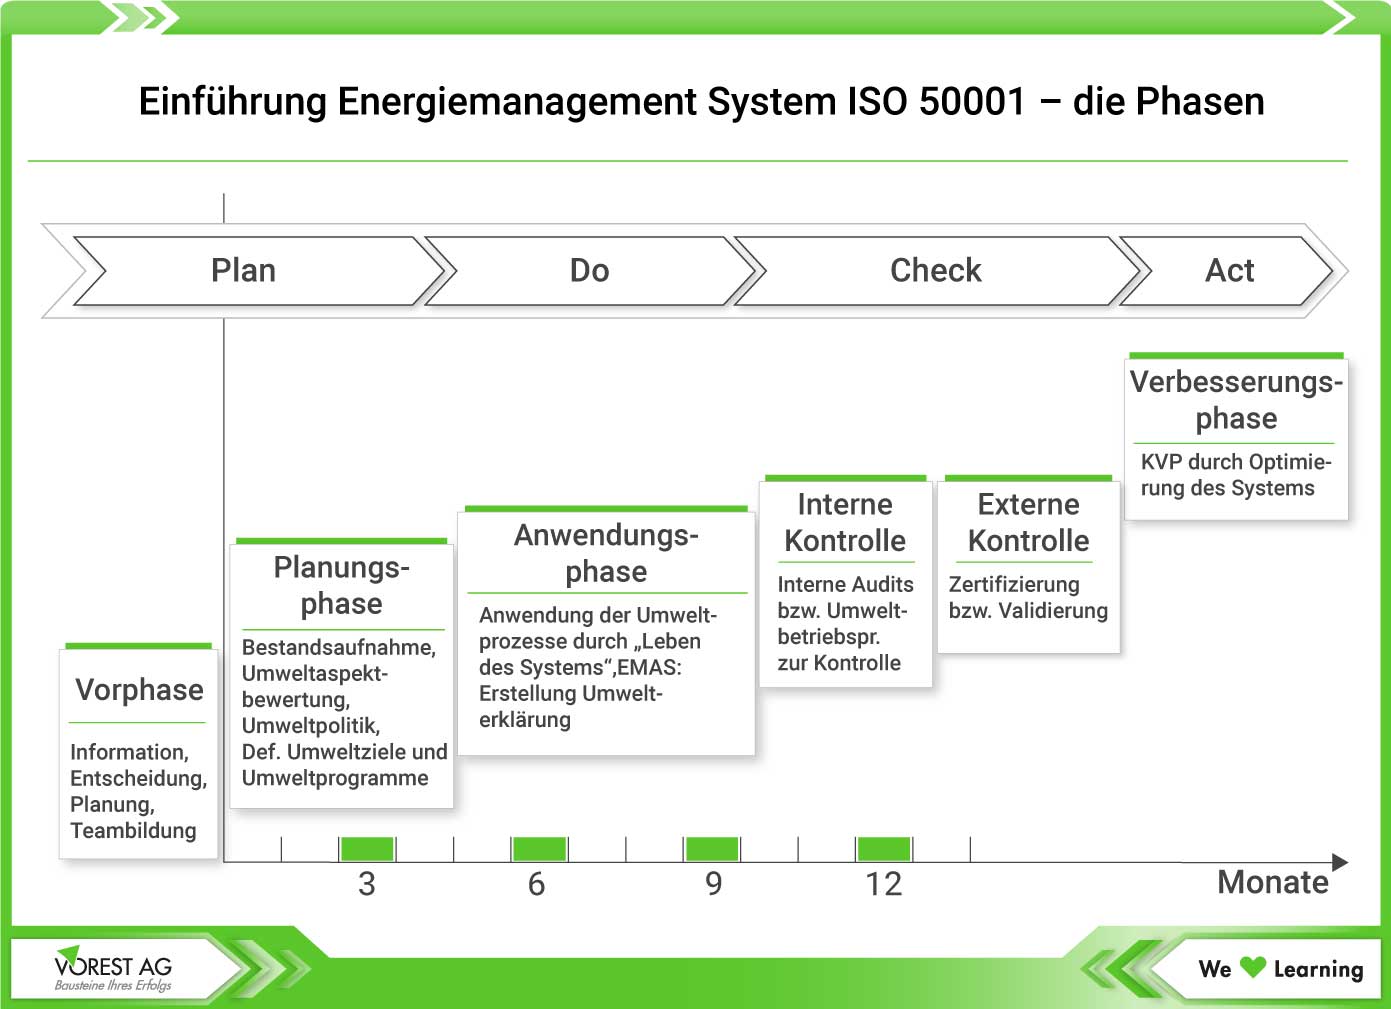 Darstellung der Phasen der Einführung eines ISO 50001 Energiemanagement Systems nach dem PDCA Zyklus